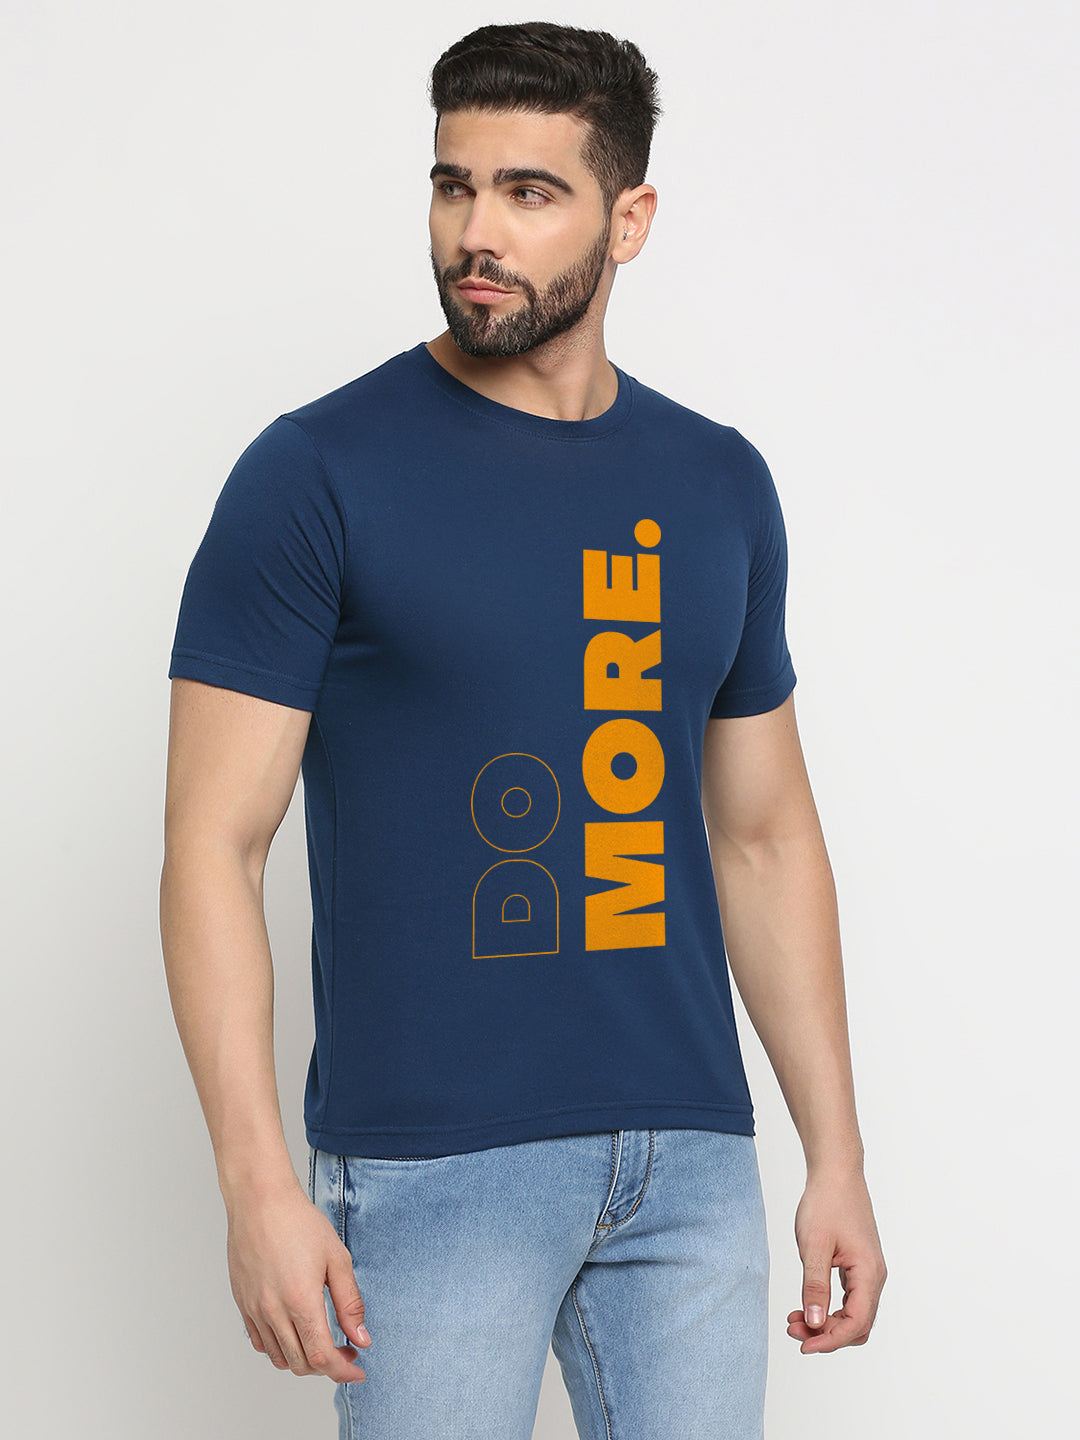 Do More T-Shirt